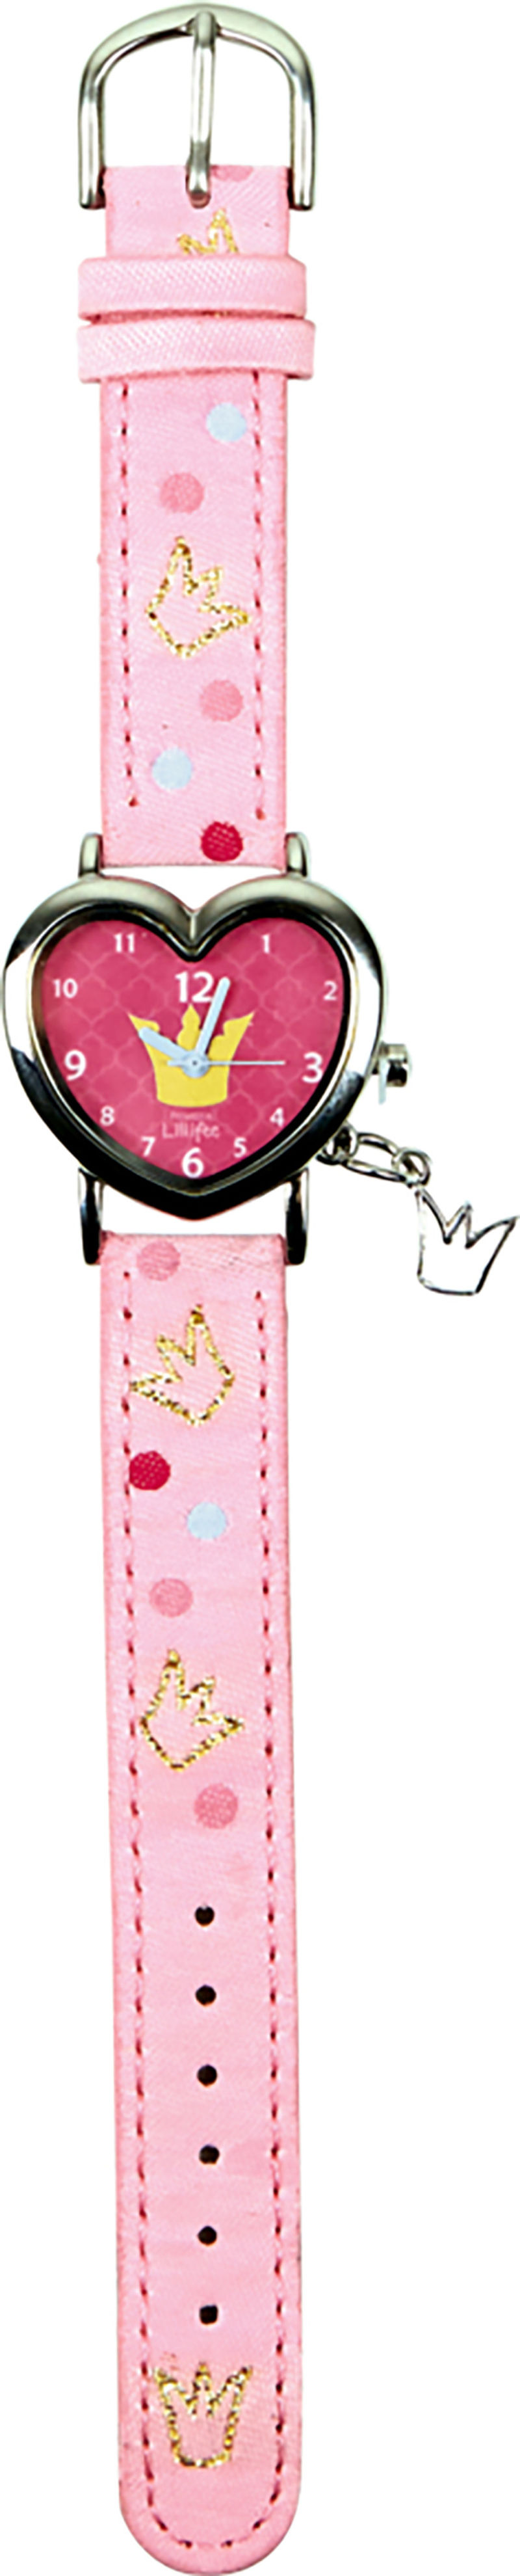 Spiegelburg Armbanduhr Prinzessin Lillifee, rosa | Weltbild.ch